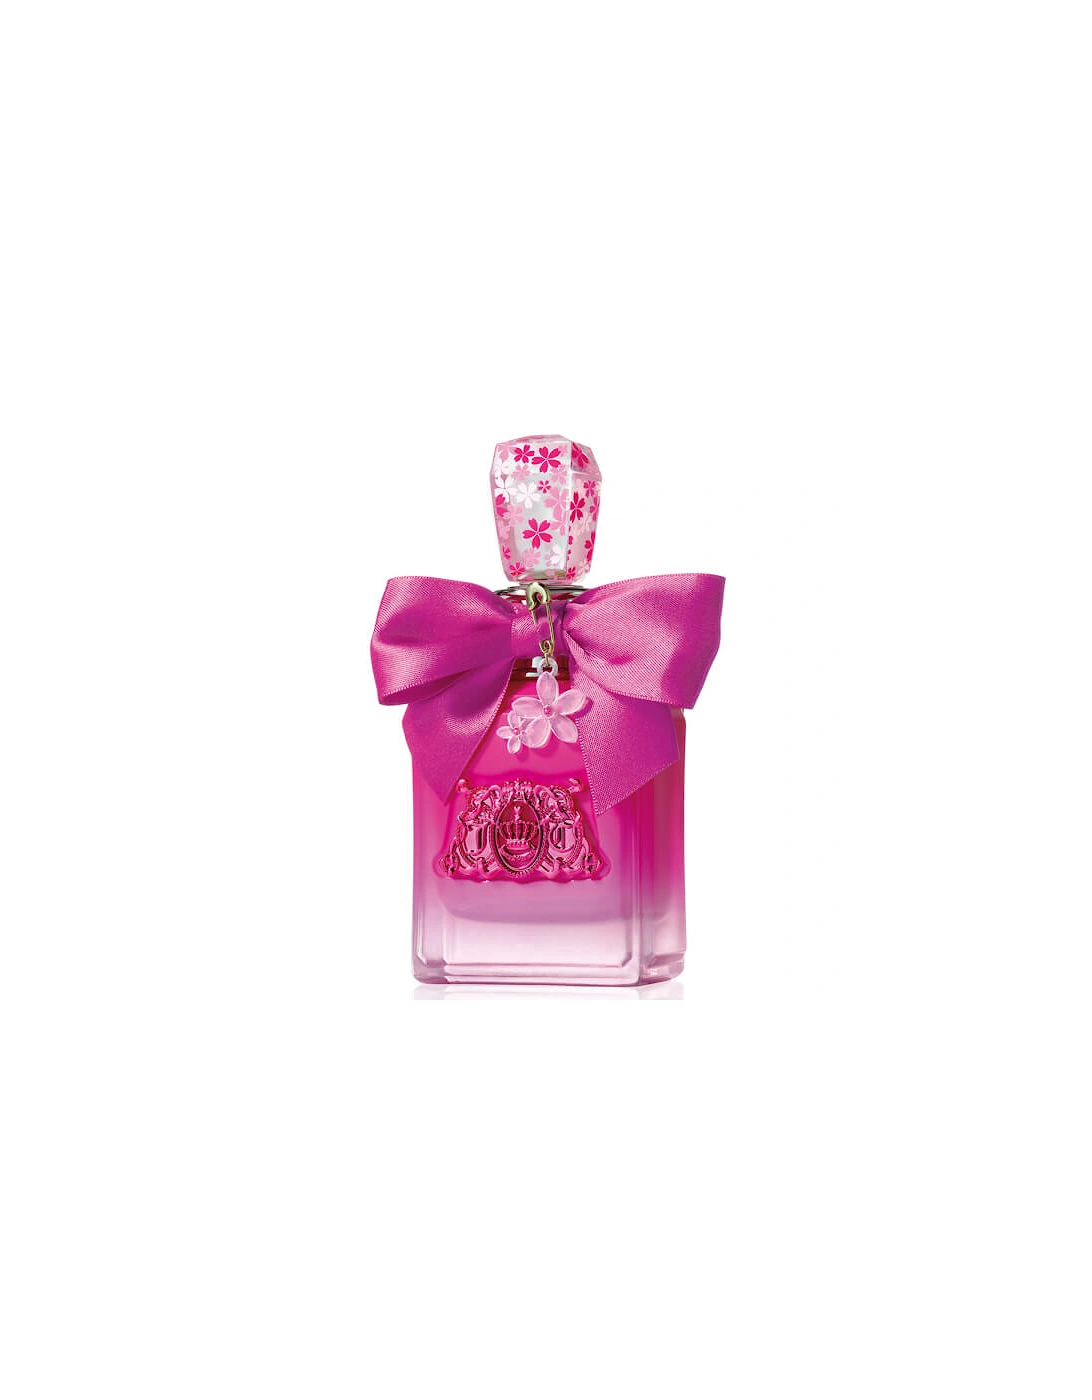 Viva La Juicy Petals Please Eau de Parfum 100ml, 2 of 1